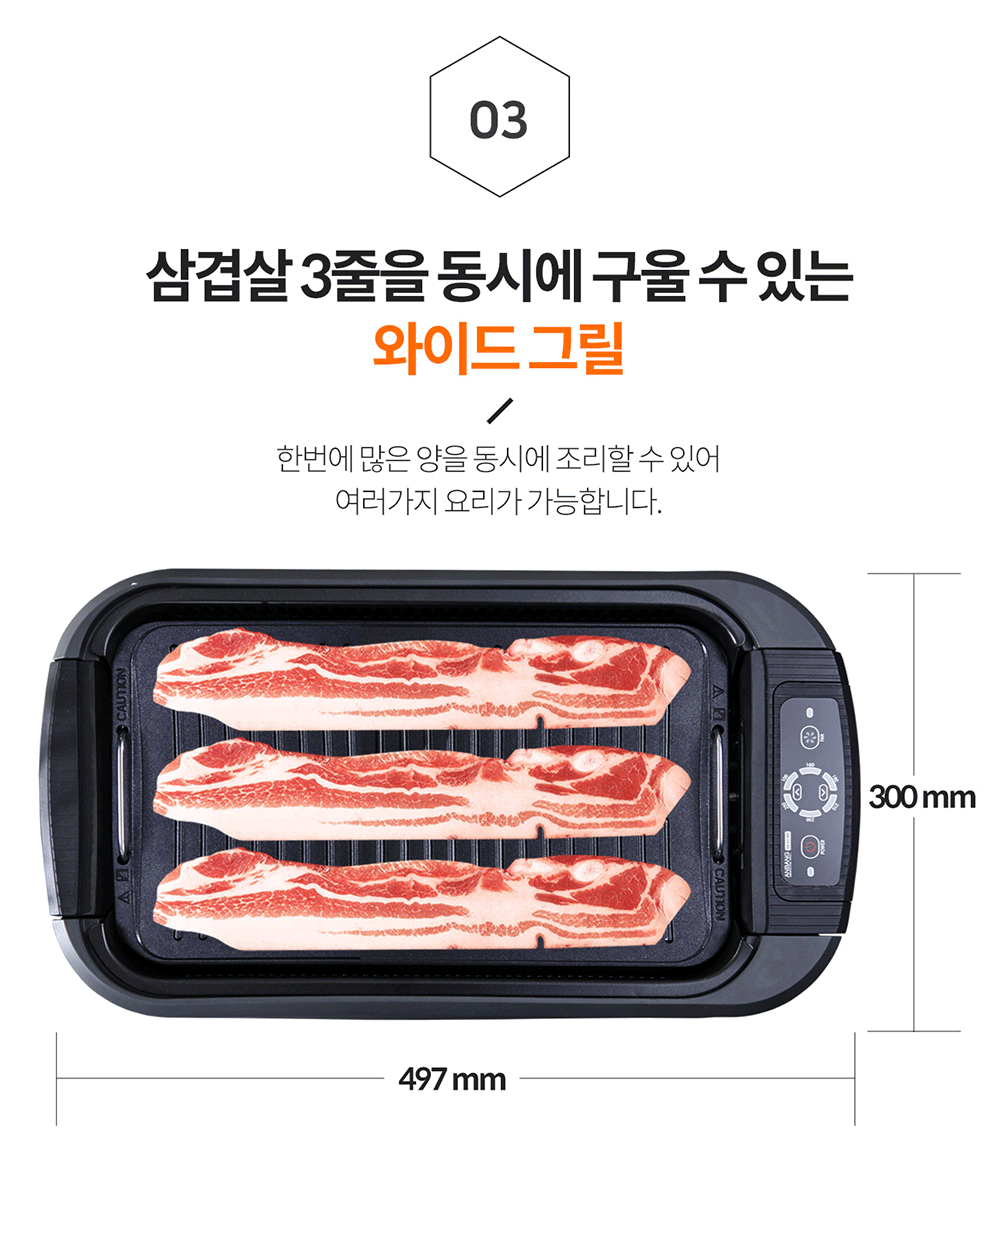 韓國食品-[DNW 디엔더블유] 연기먹는 안방그릴 (AB301MF)